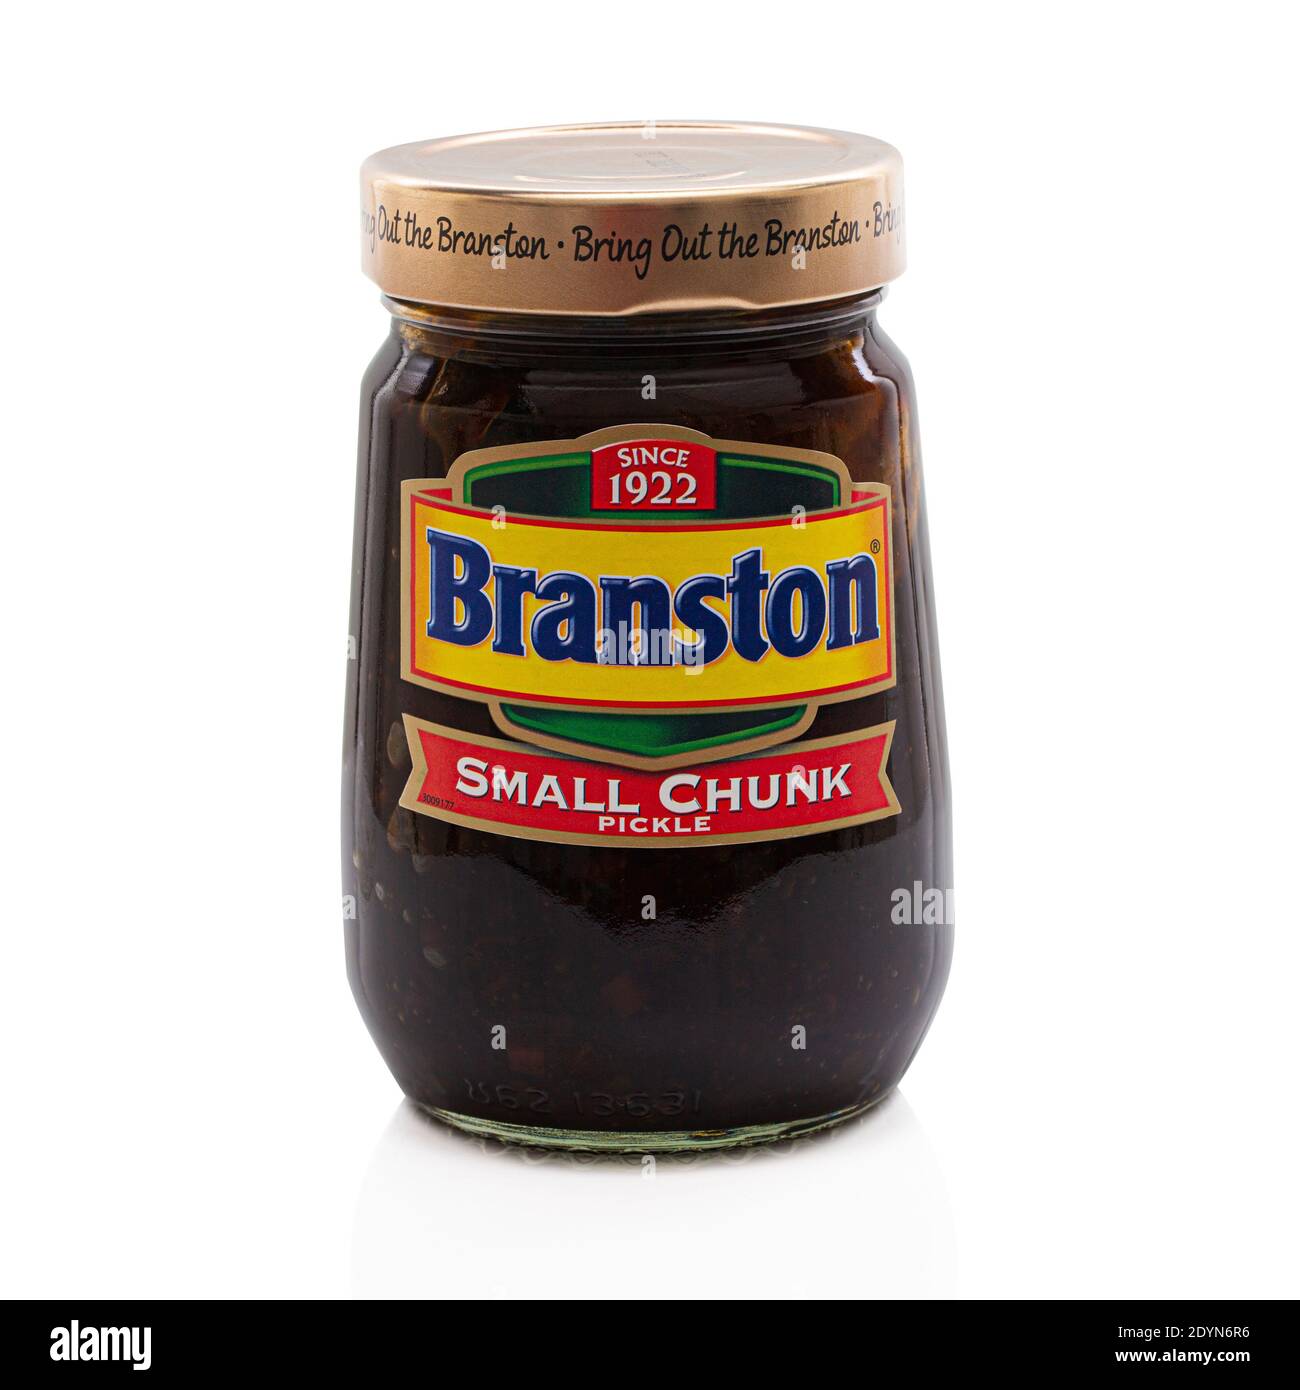 SWINDON, UK - 27. DEZEMBER 2020: JAR of Branston Small Chunk Pickle - Bring die Branston seit 1922, auf weißem Hintergrund. Stockfoto